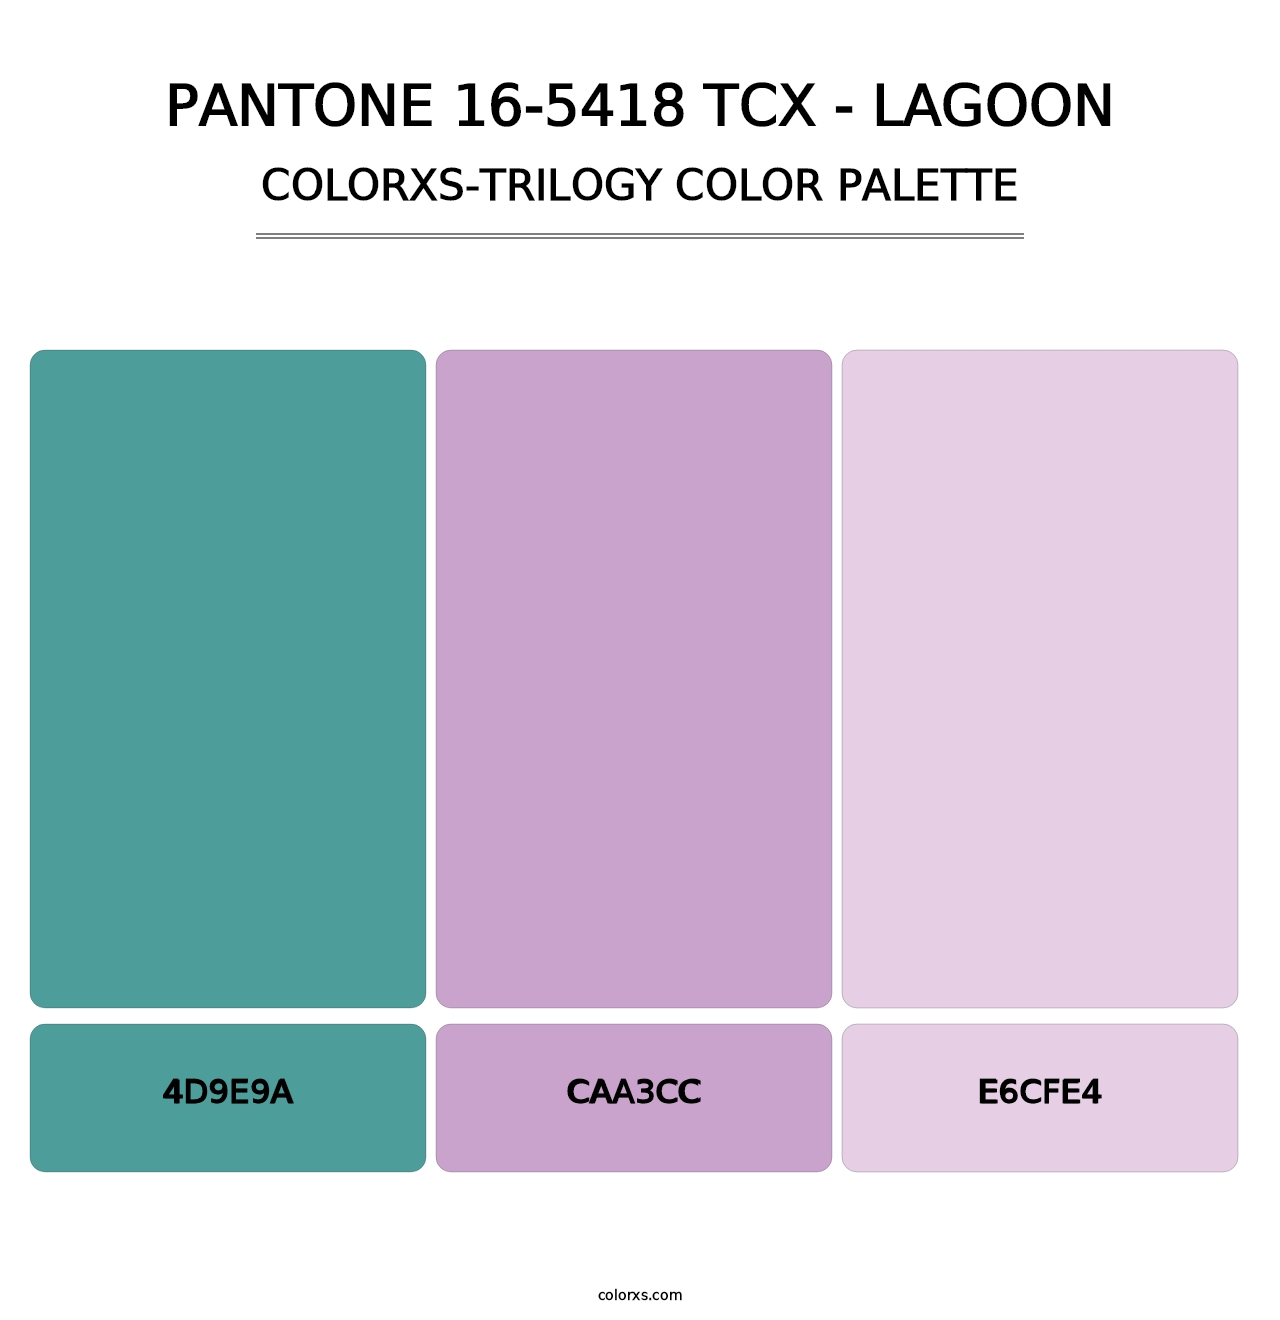 PANTONE 16-5418 TCX - Lagoon - Colorxs Trilogy Palette